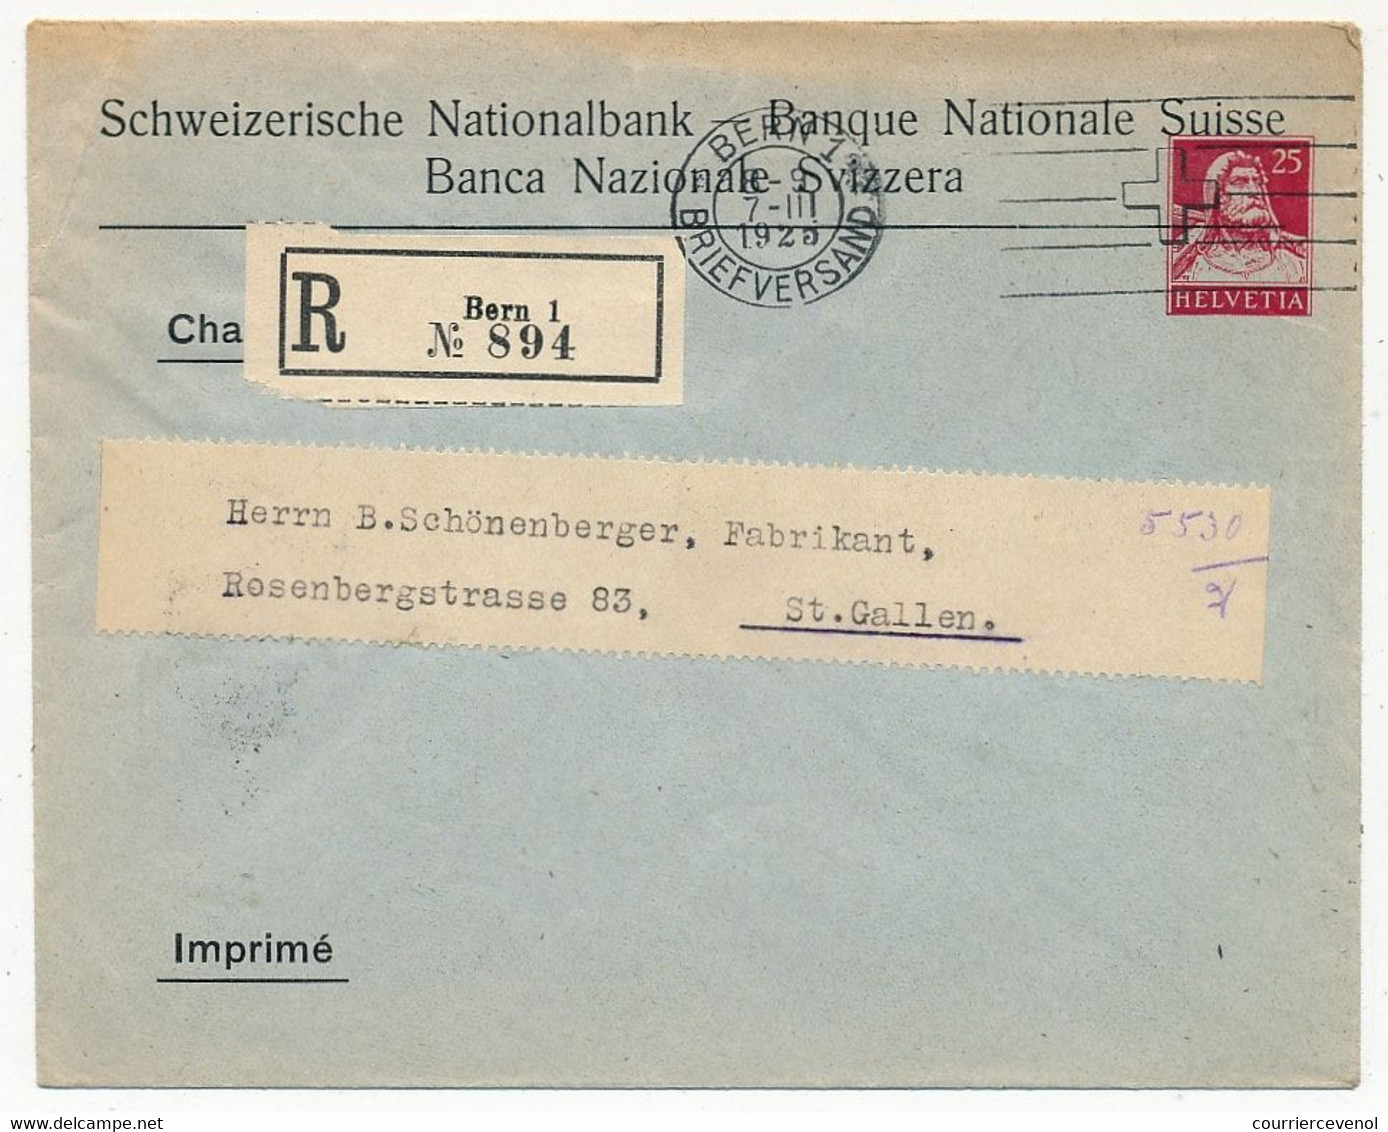 SUISSE - Enveloppe (Entier Postal PRIVÉ) 25c Helvetia - Banque Nationale Suisse - Recommandée Bern 1 - 1925 - Interi Postali